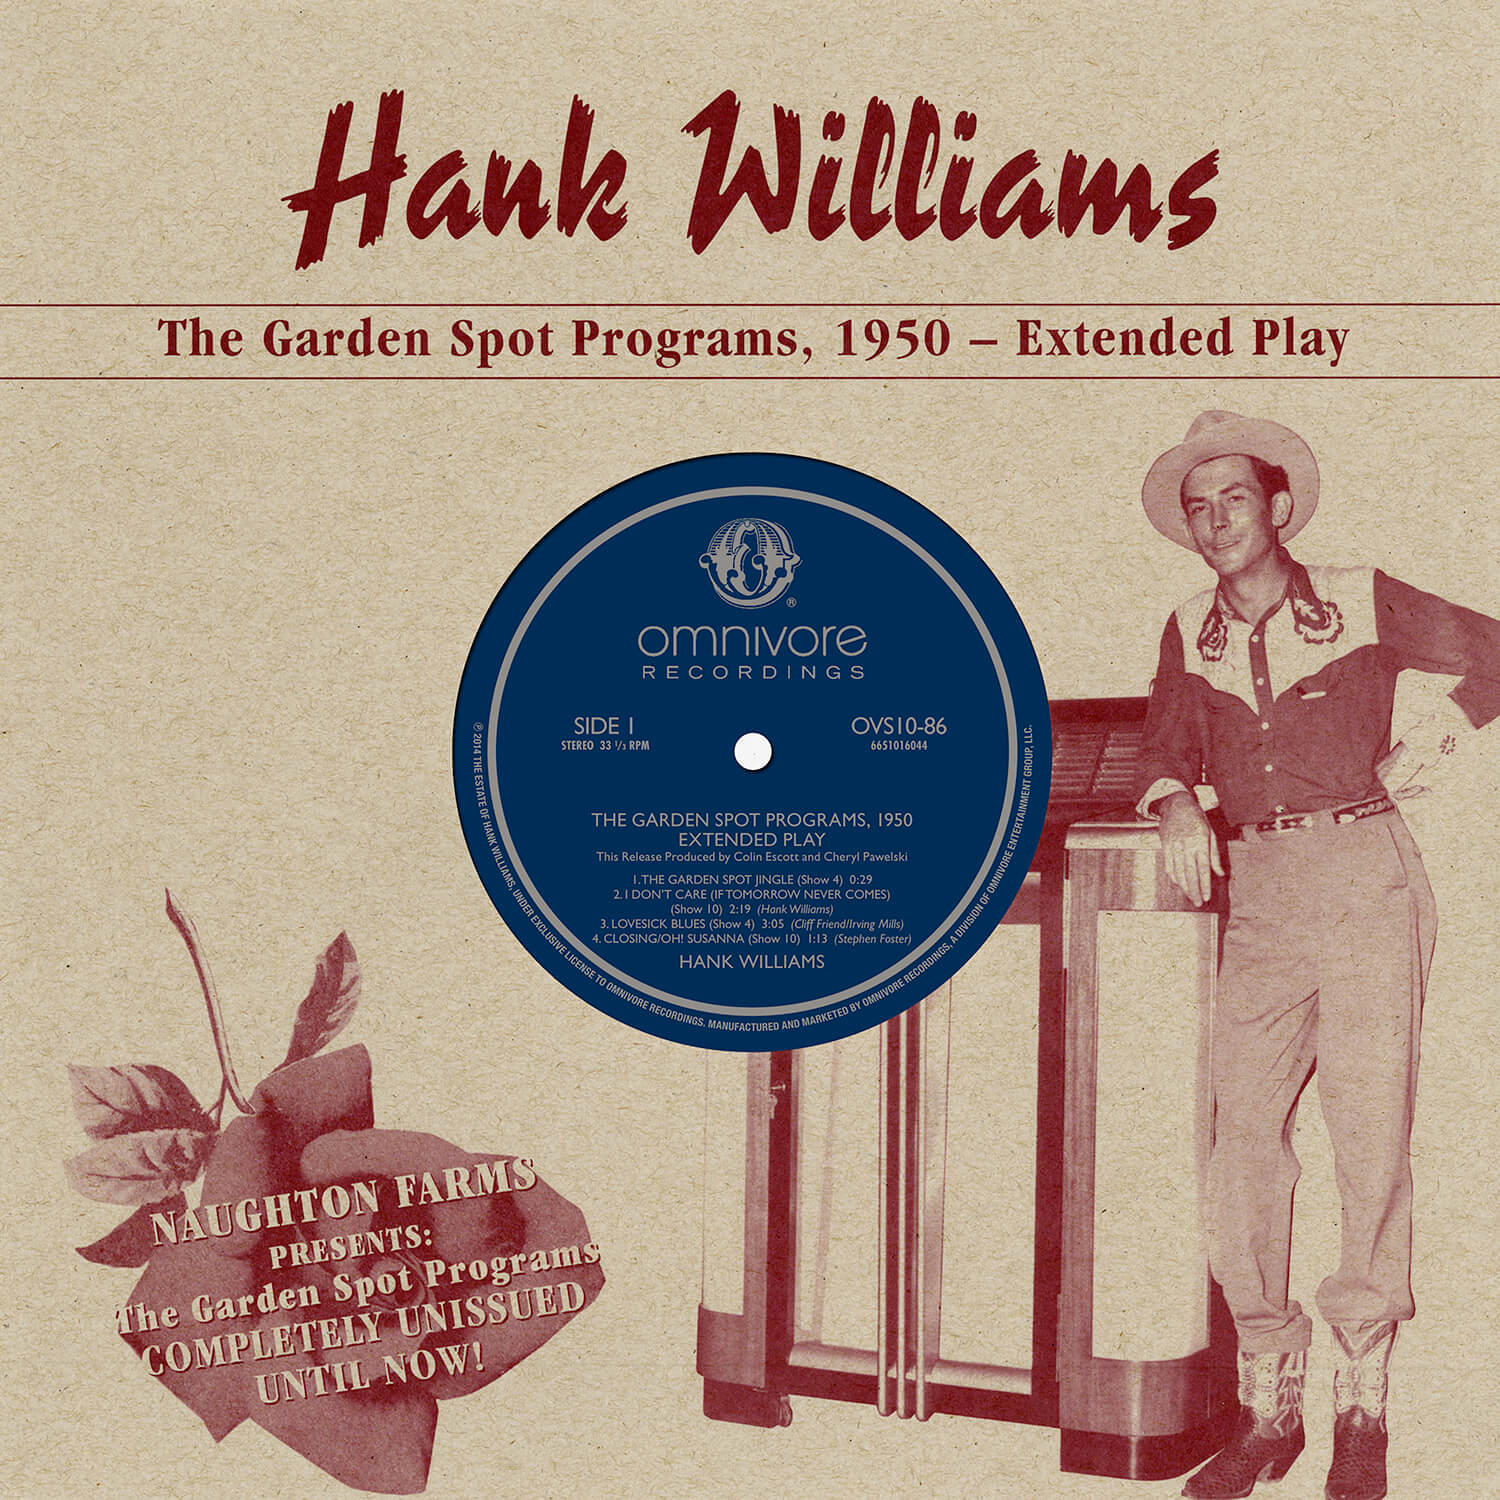 The Garden Spot Programs, 1950 - Extended Play